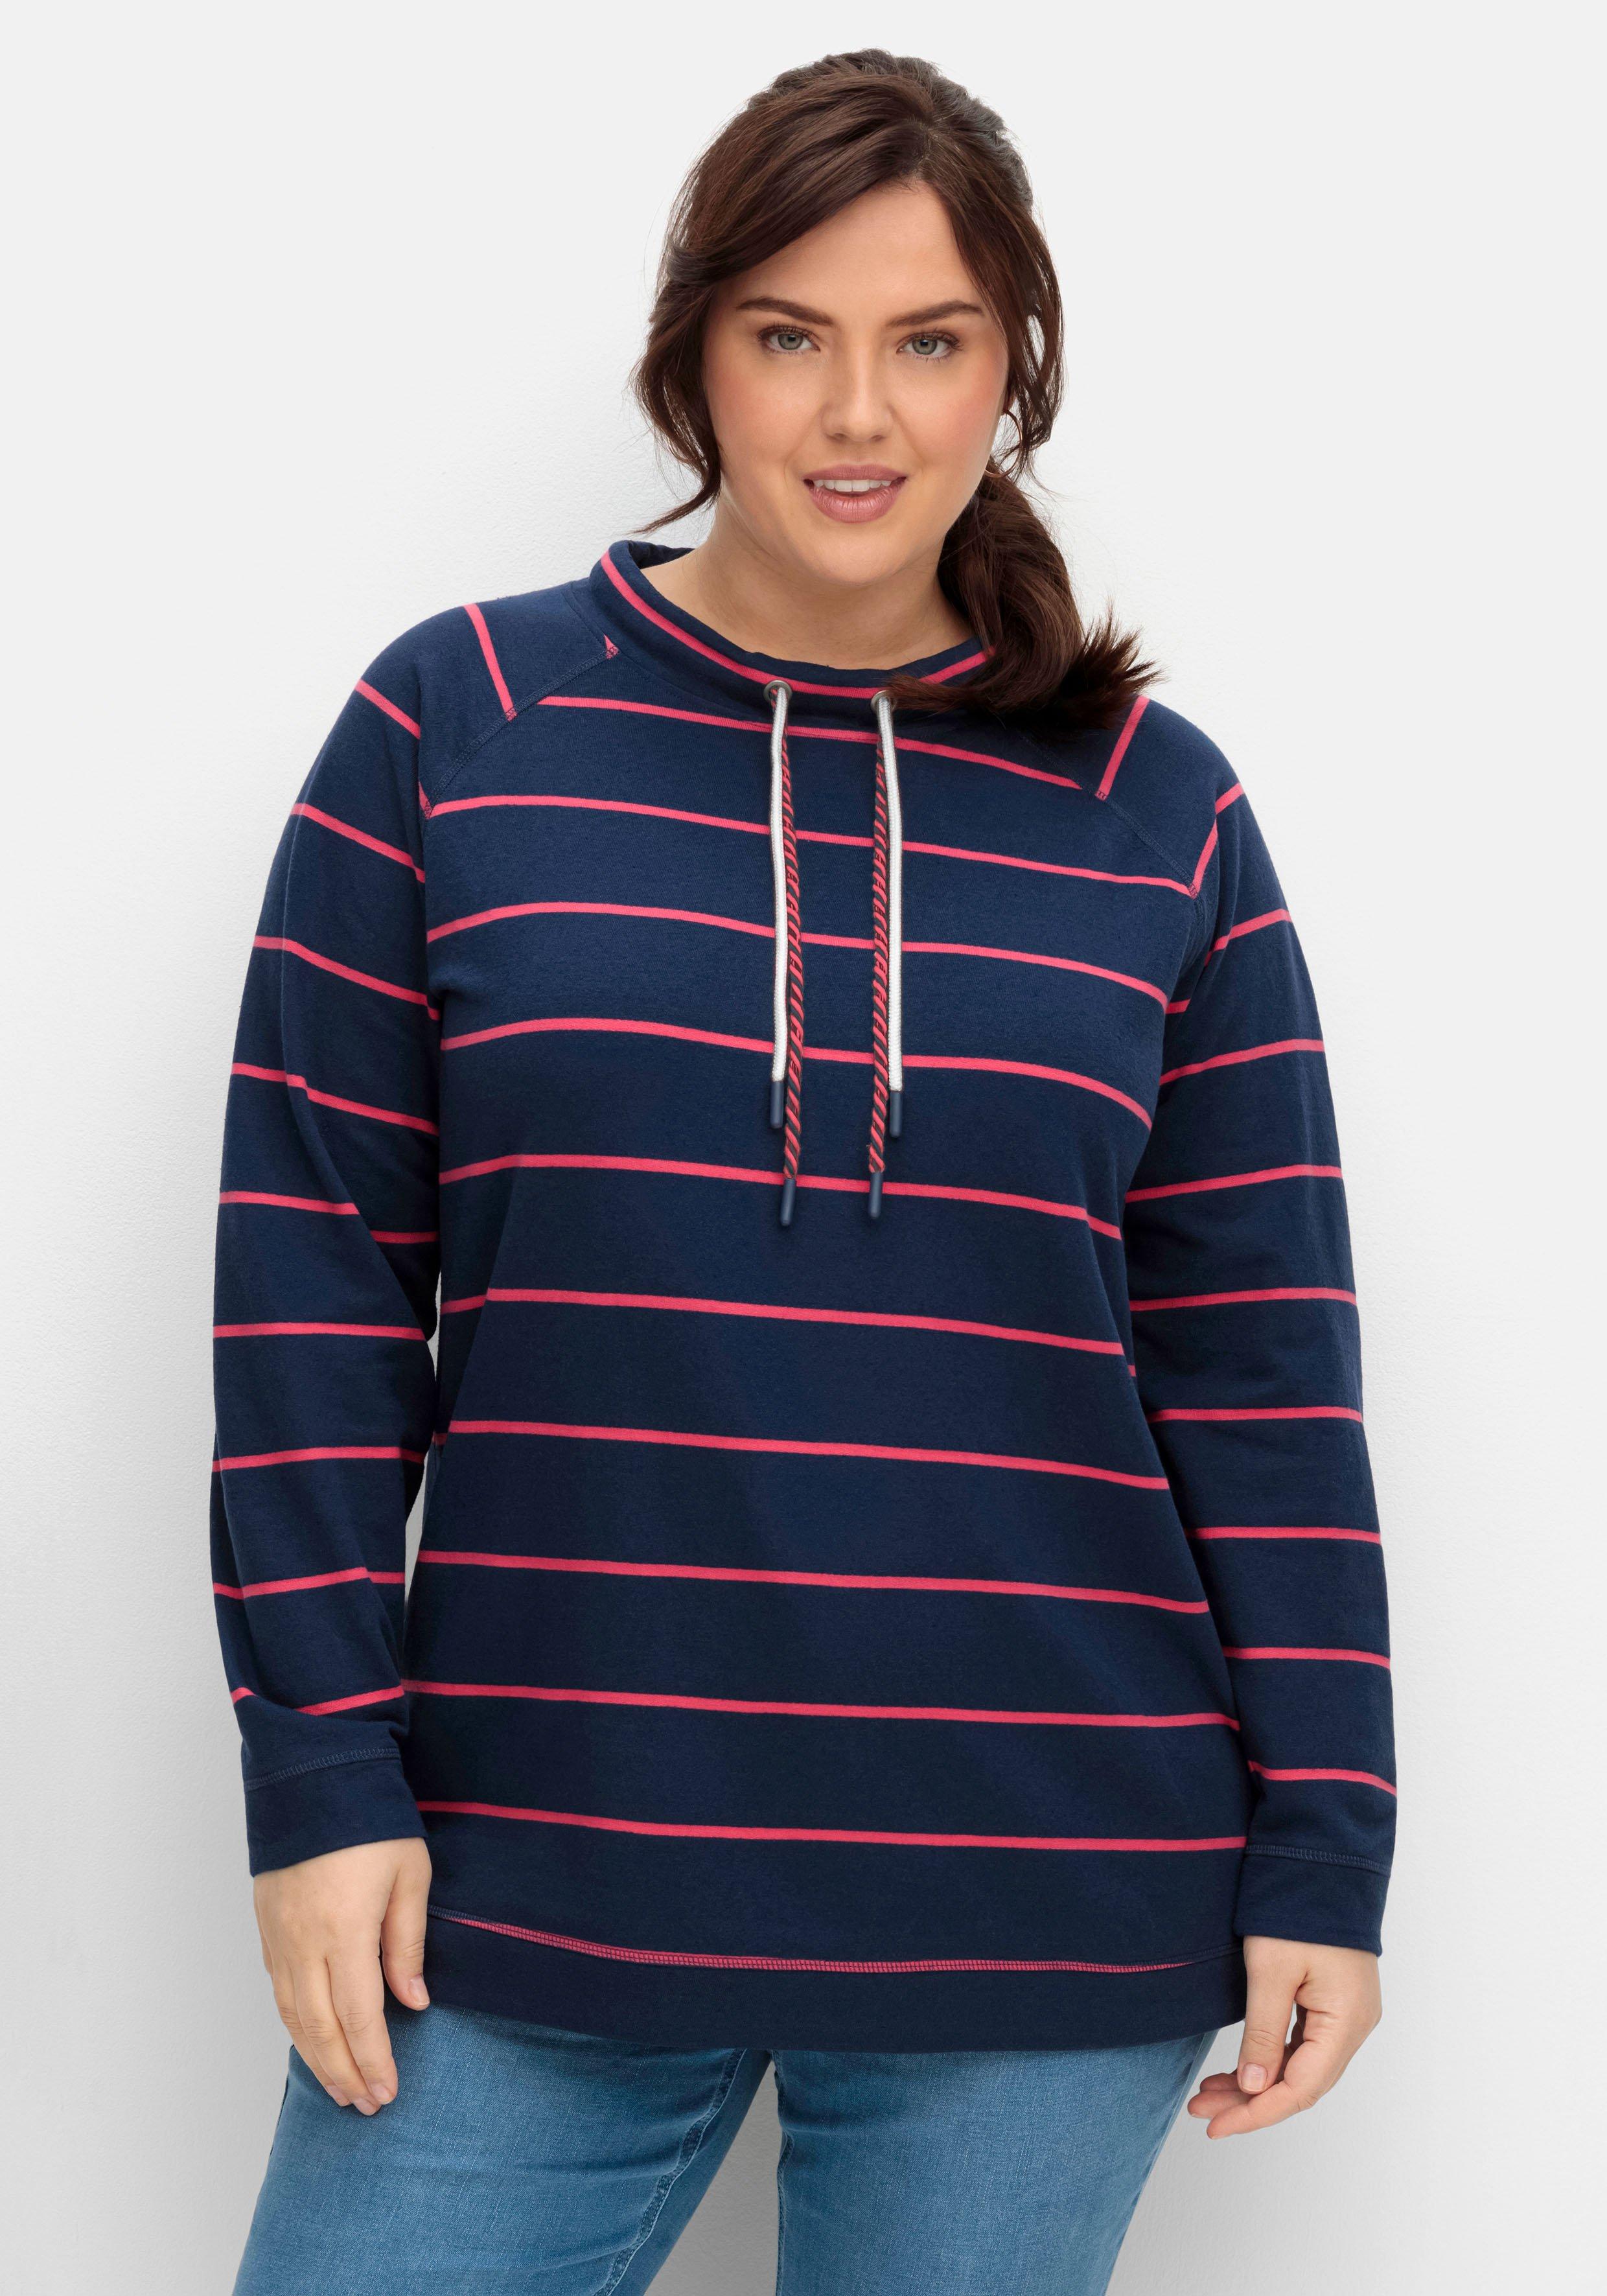 Damen Sweatshirts & -jacken große Größen › Größe 58 | sheego ♥ Plus Size  Mode